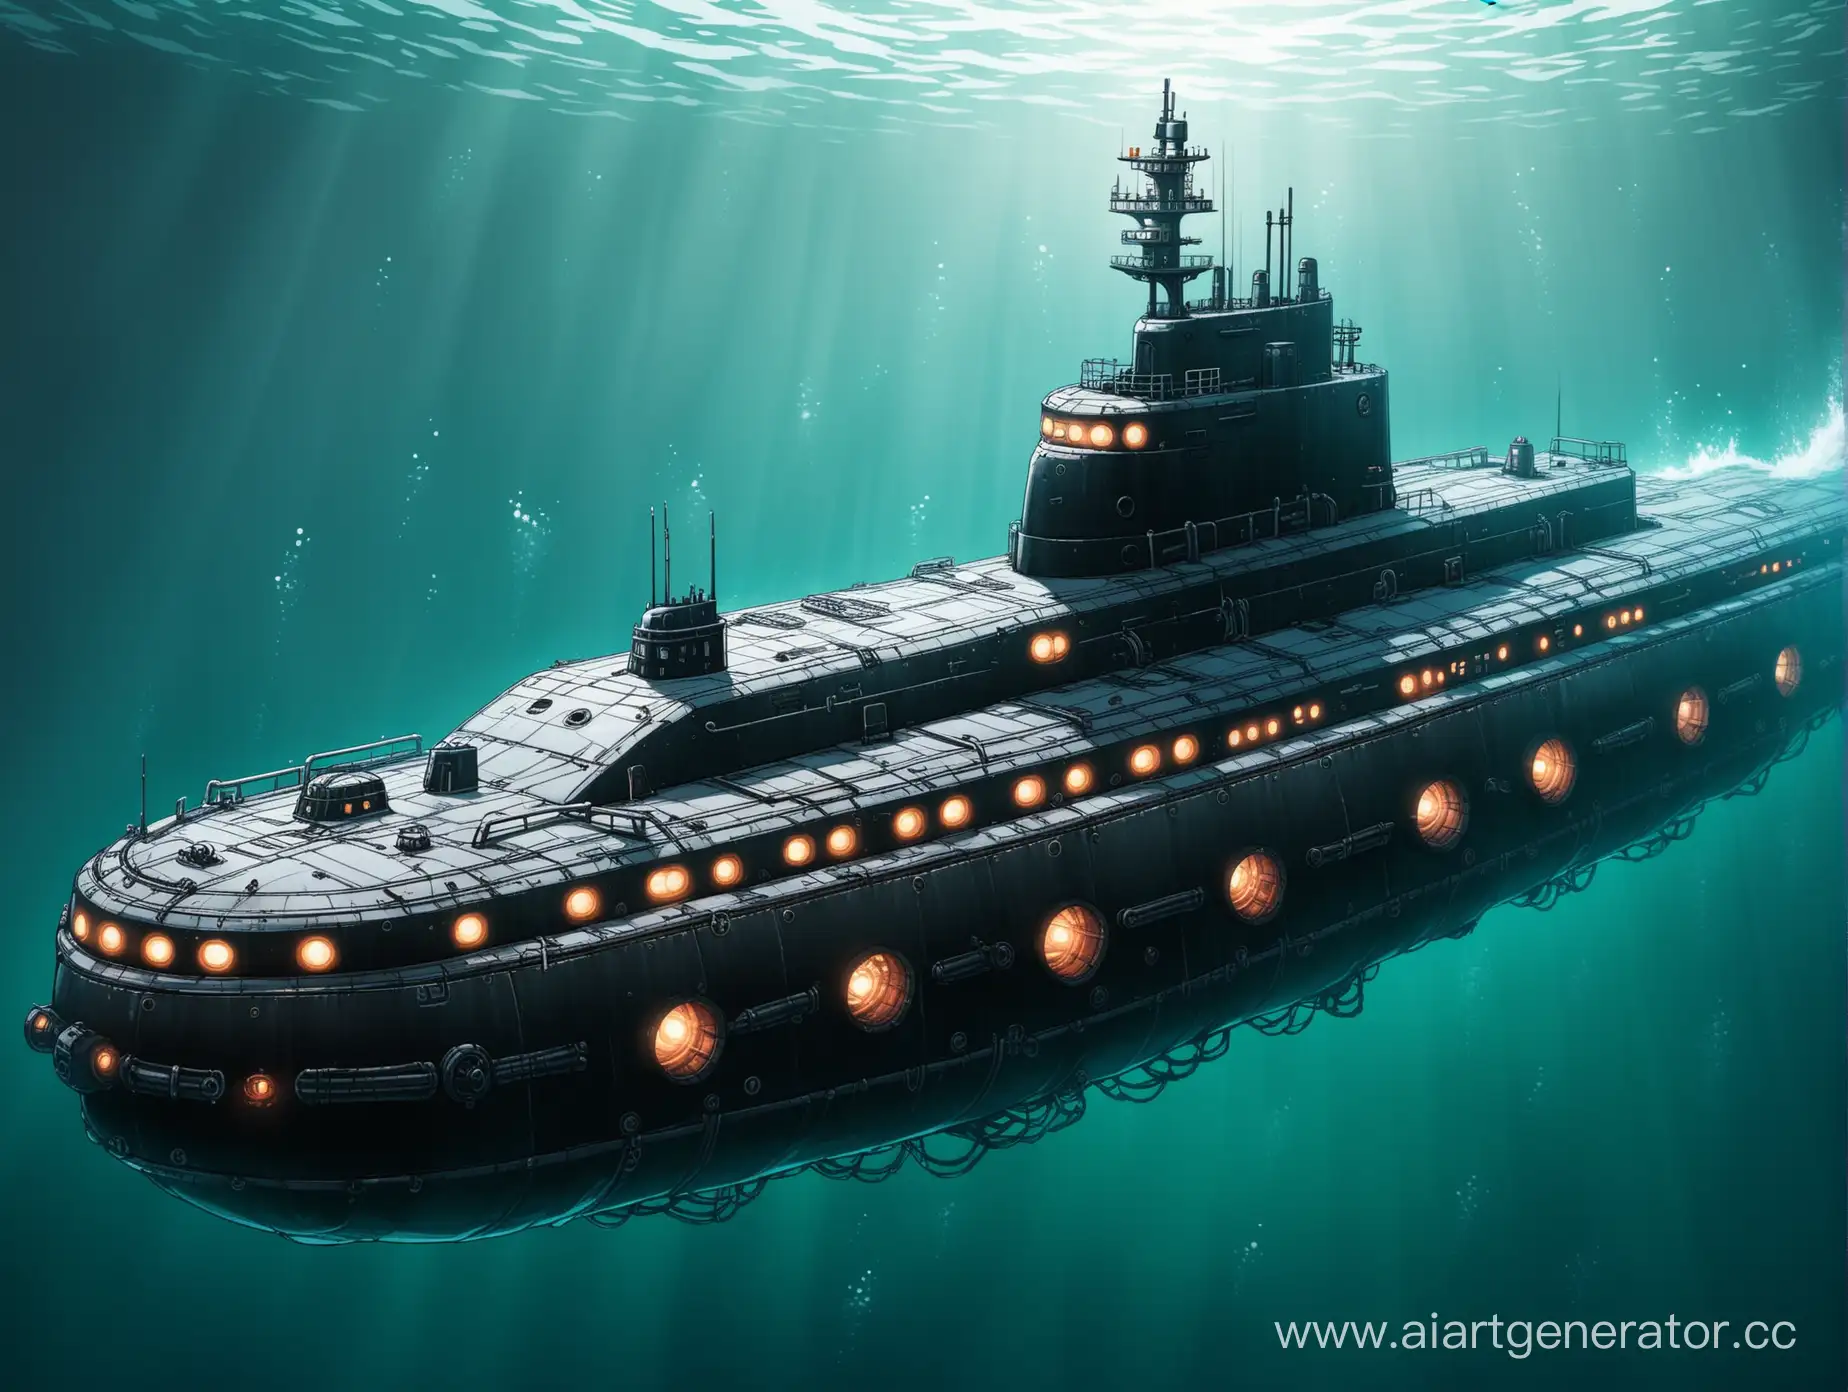 подводная лодка необычной формы в стиле игры "Barotrauma"